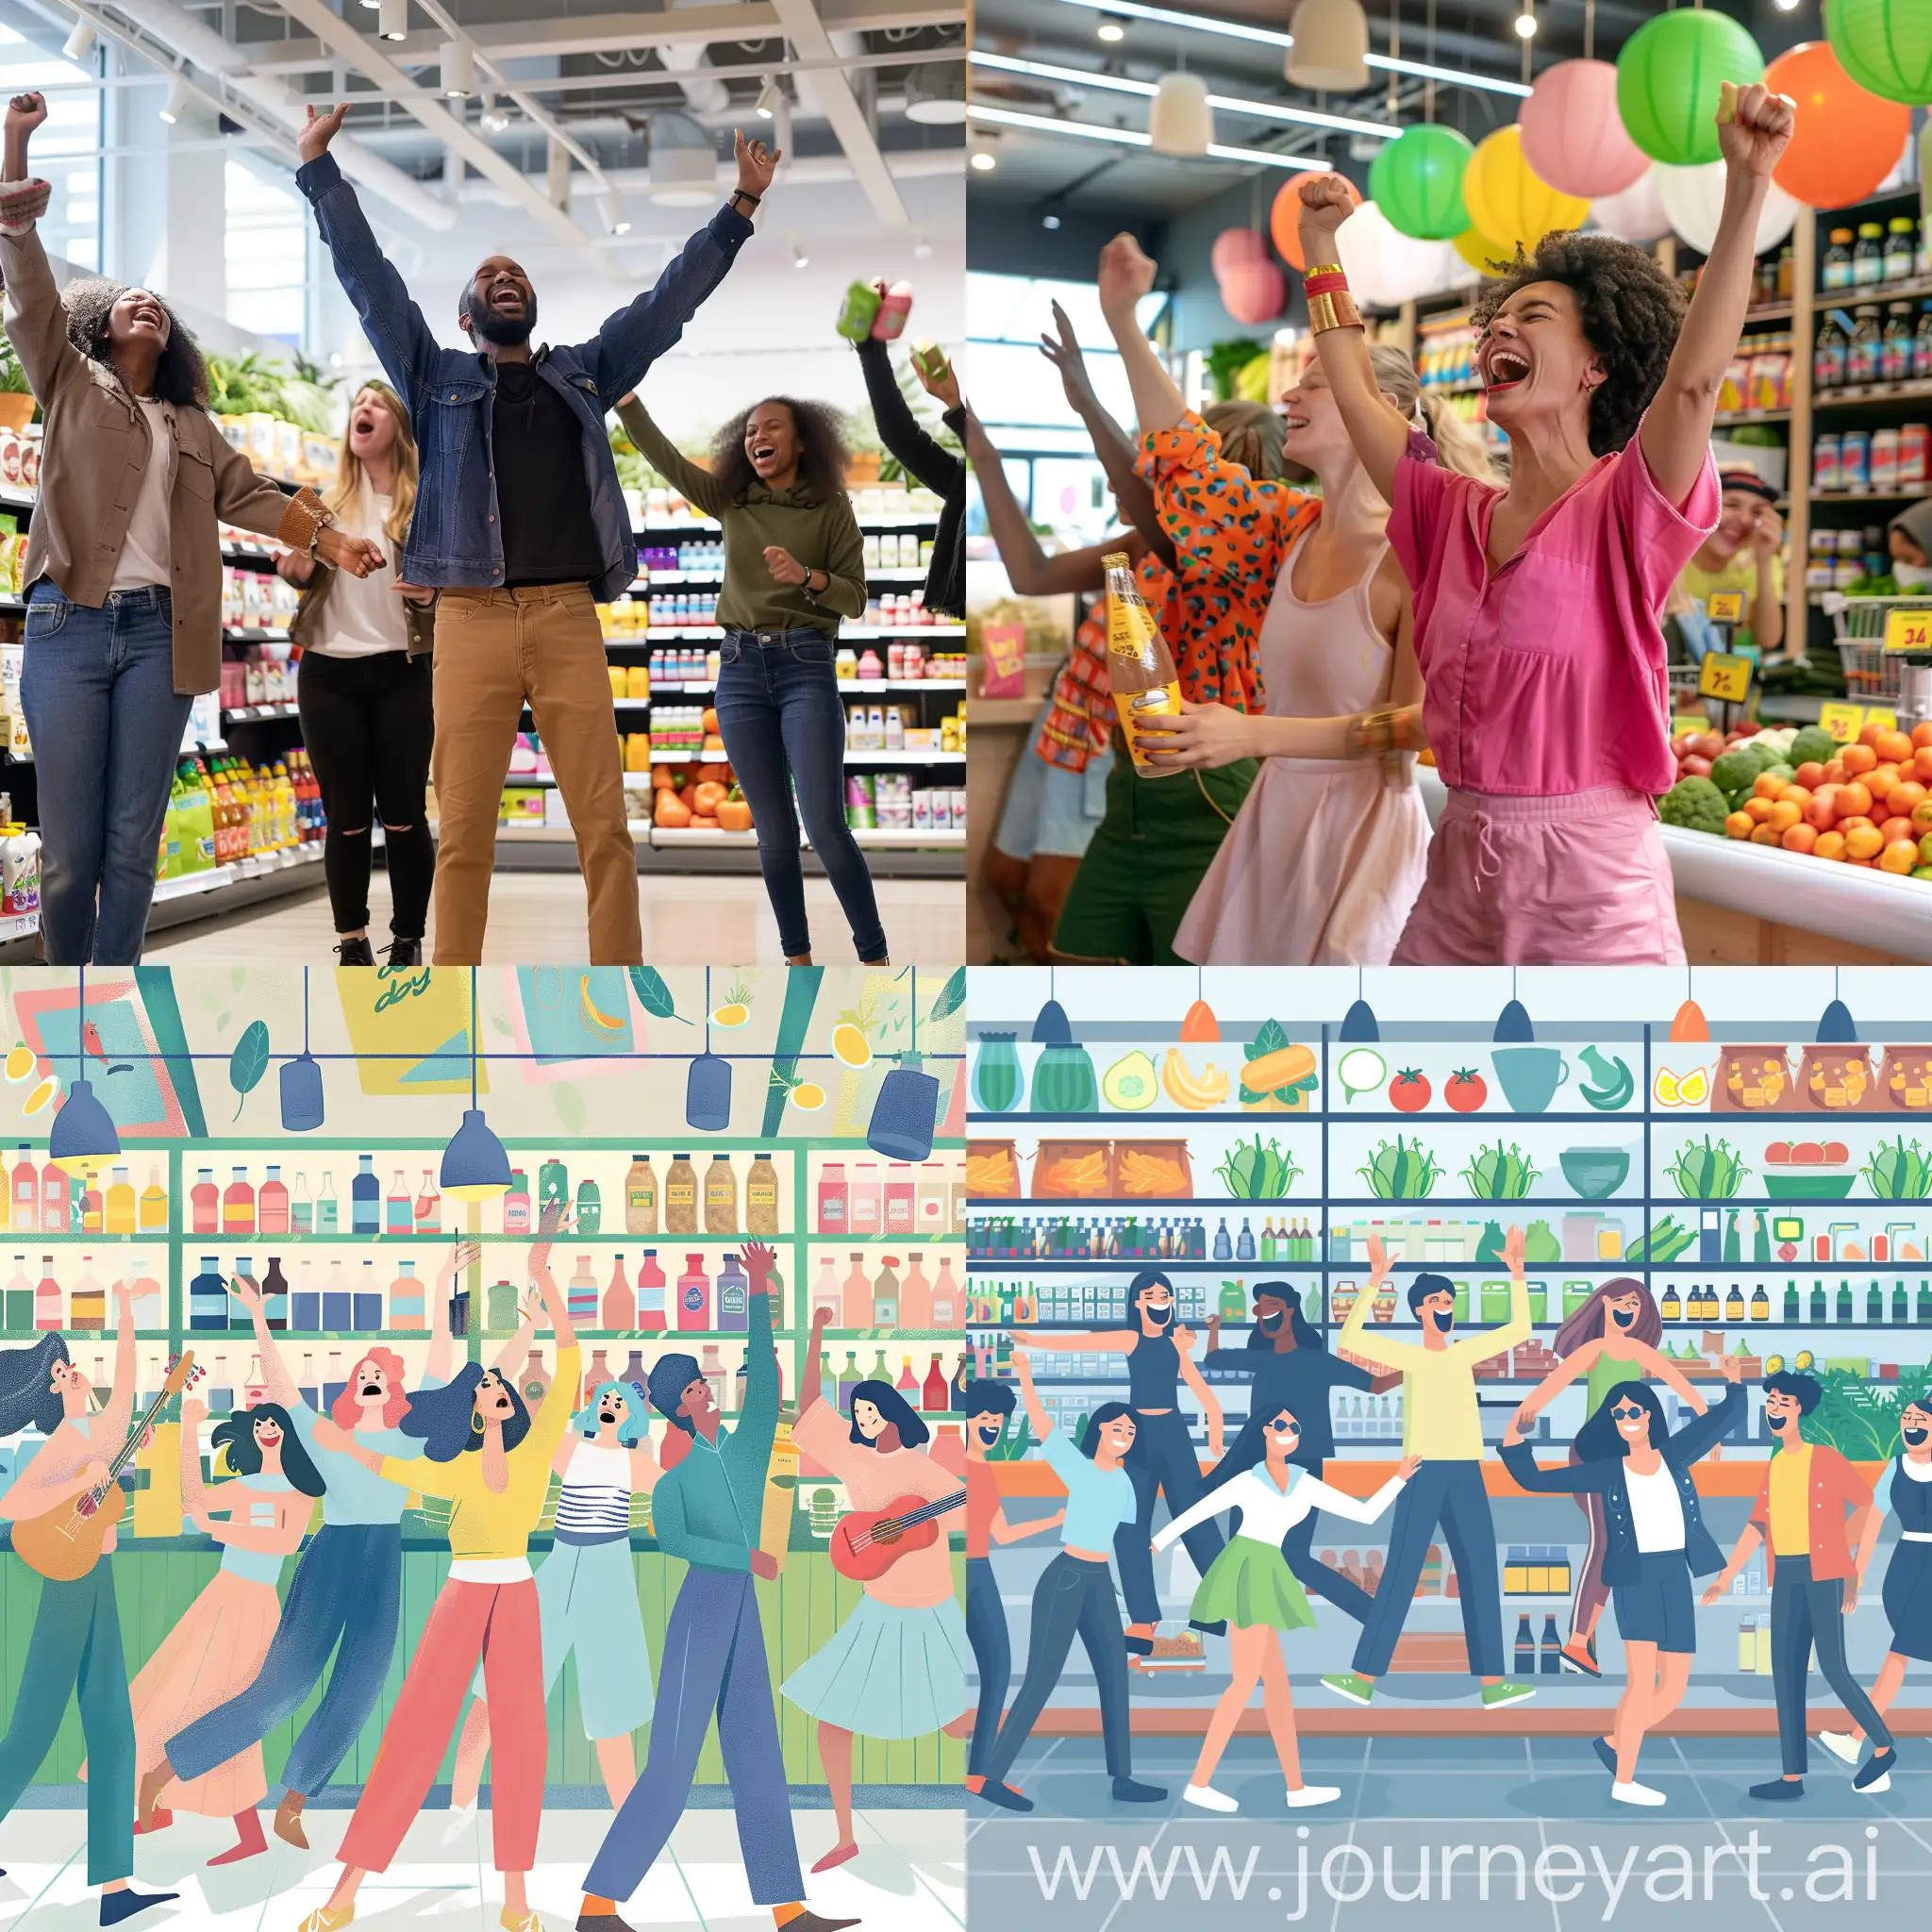 довольные покупатели поют и танцуют в экологичном продуктовом магазине "day by day"